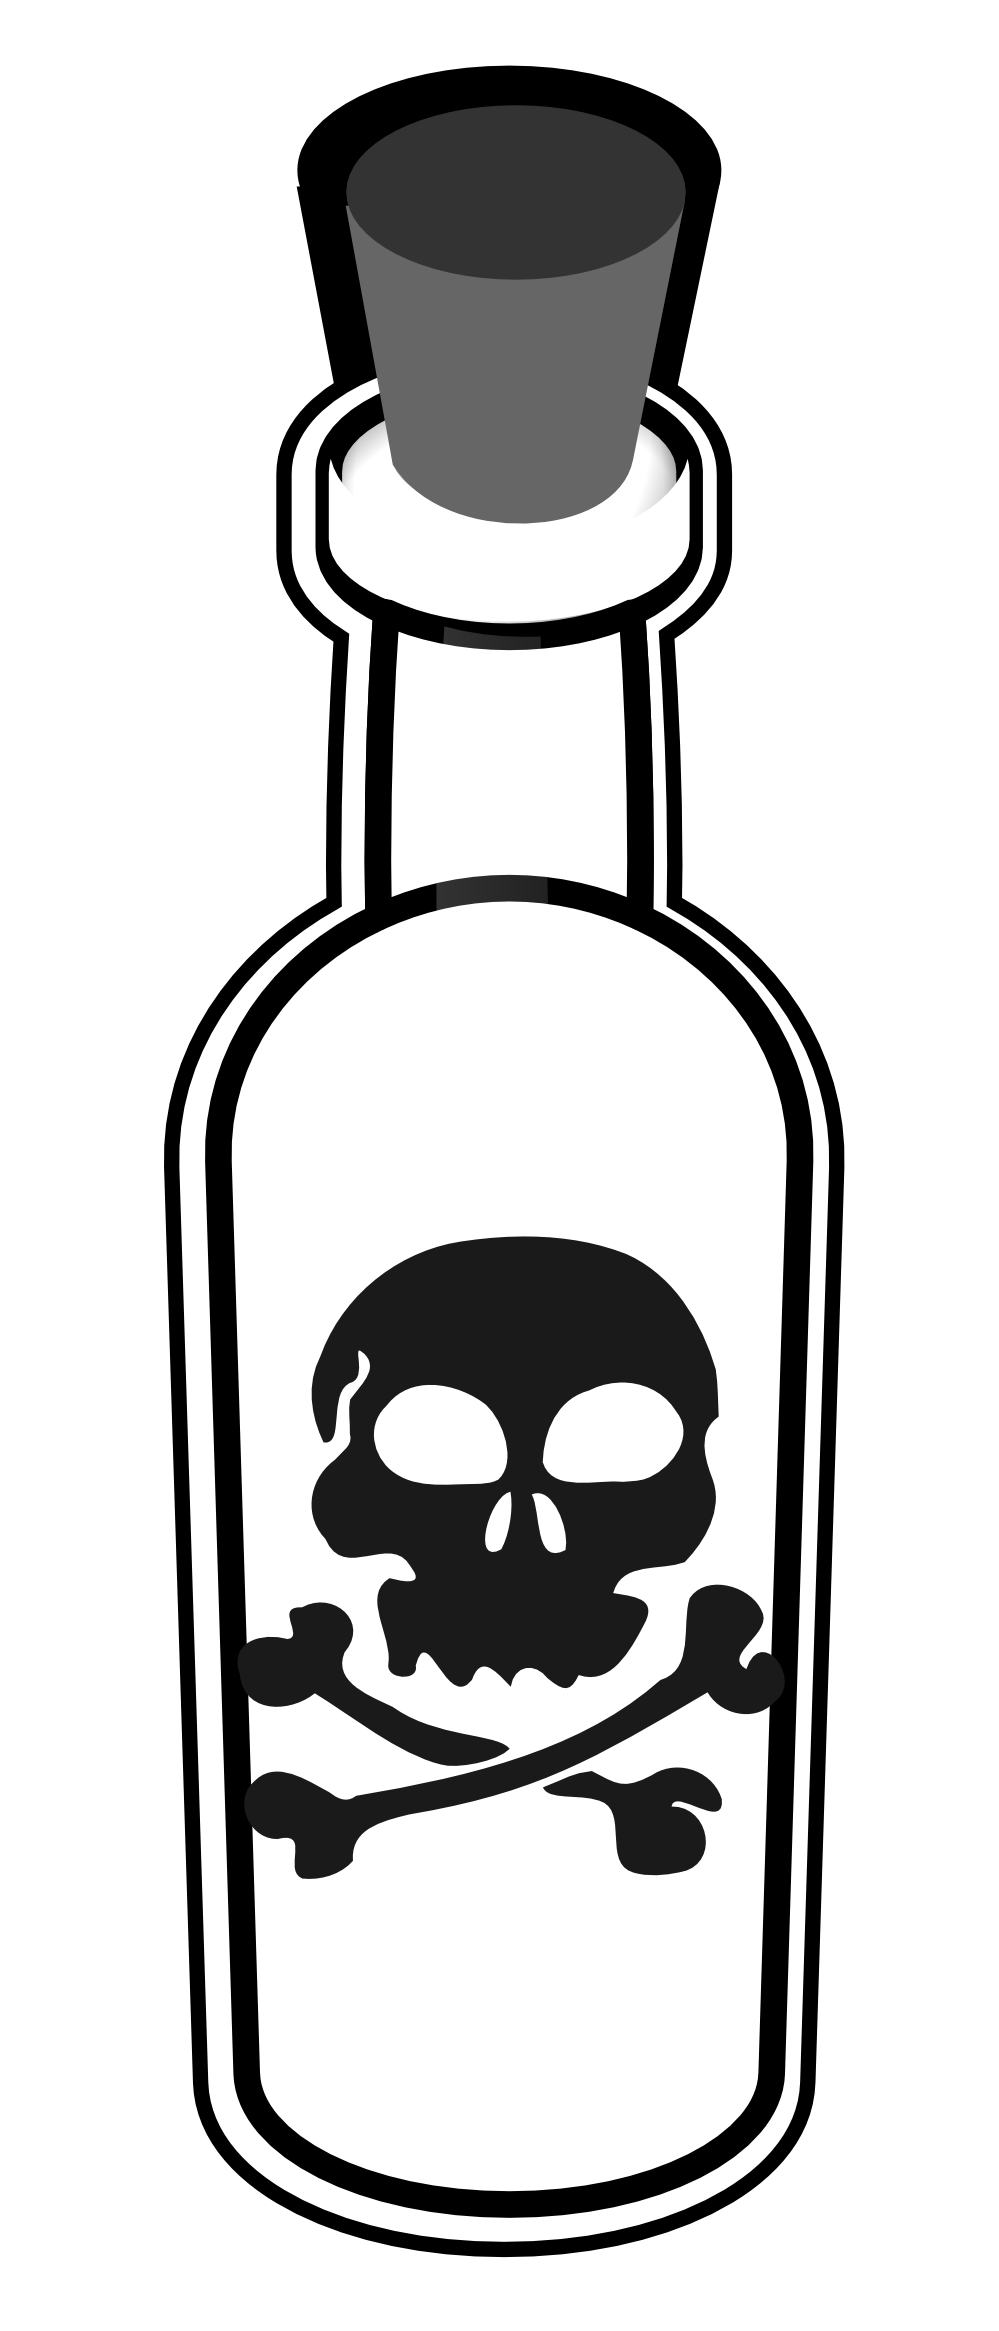 Poison Transparent Image